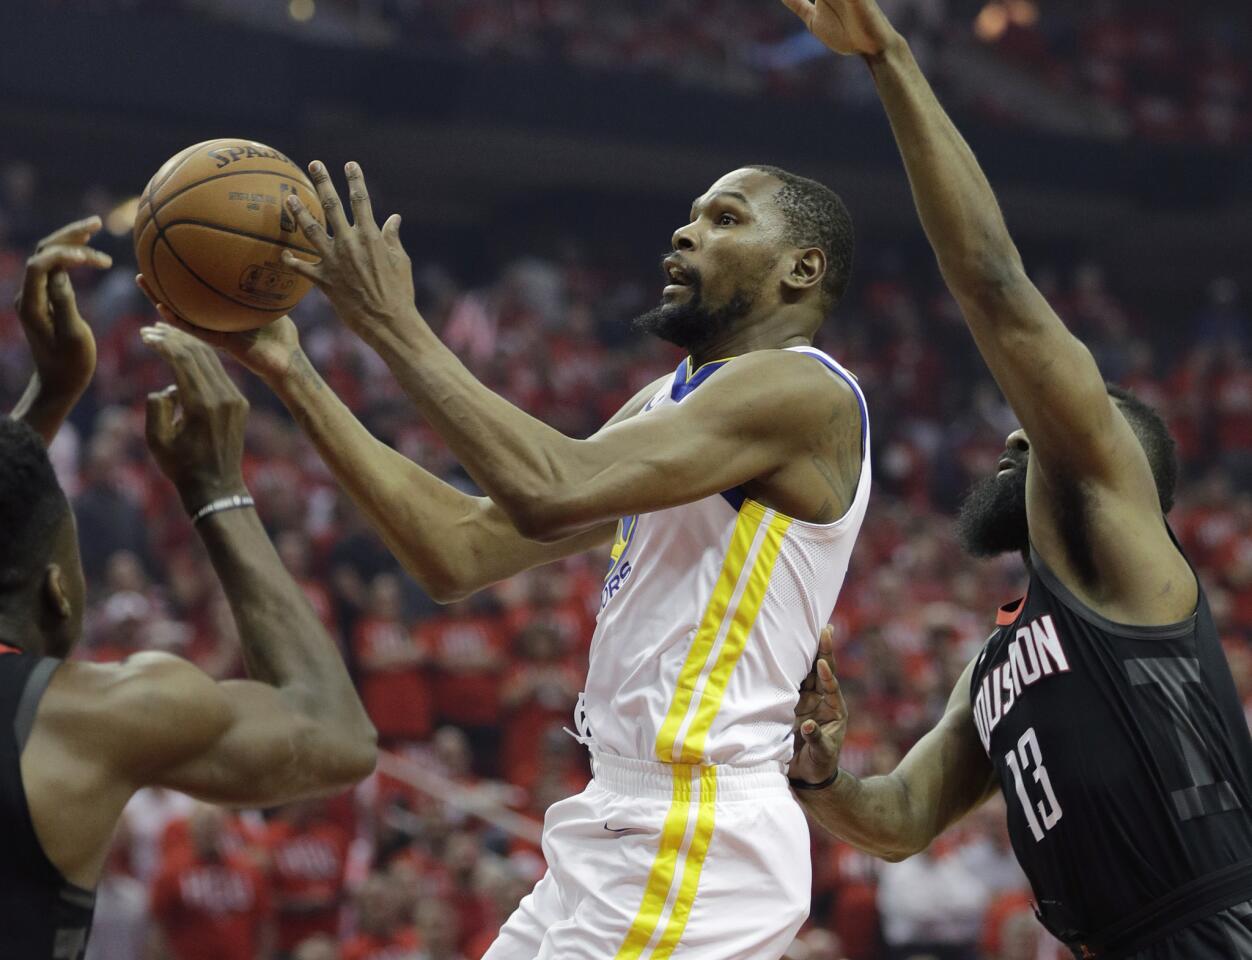 El alero de los Warriors de Golden State, Kevin Durant, ataca el aro y deja atrás a James Harden, de los Rockets de Houston, en la primera mitad del juego 1 de la Final de la Conferencia Oeste el lunes 14 de mayo de 2018 en Houston.